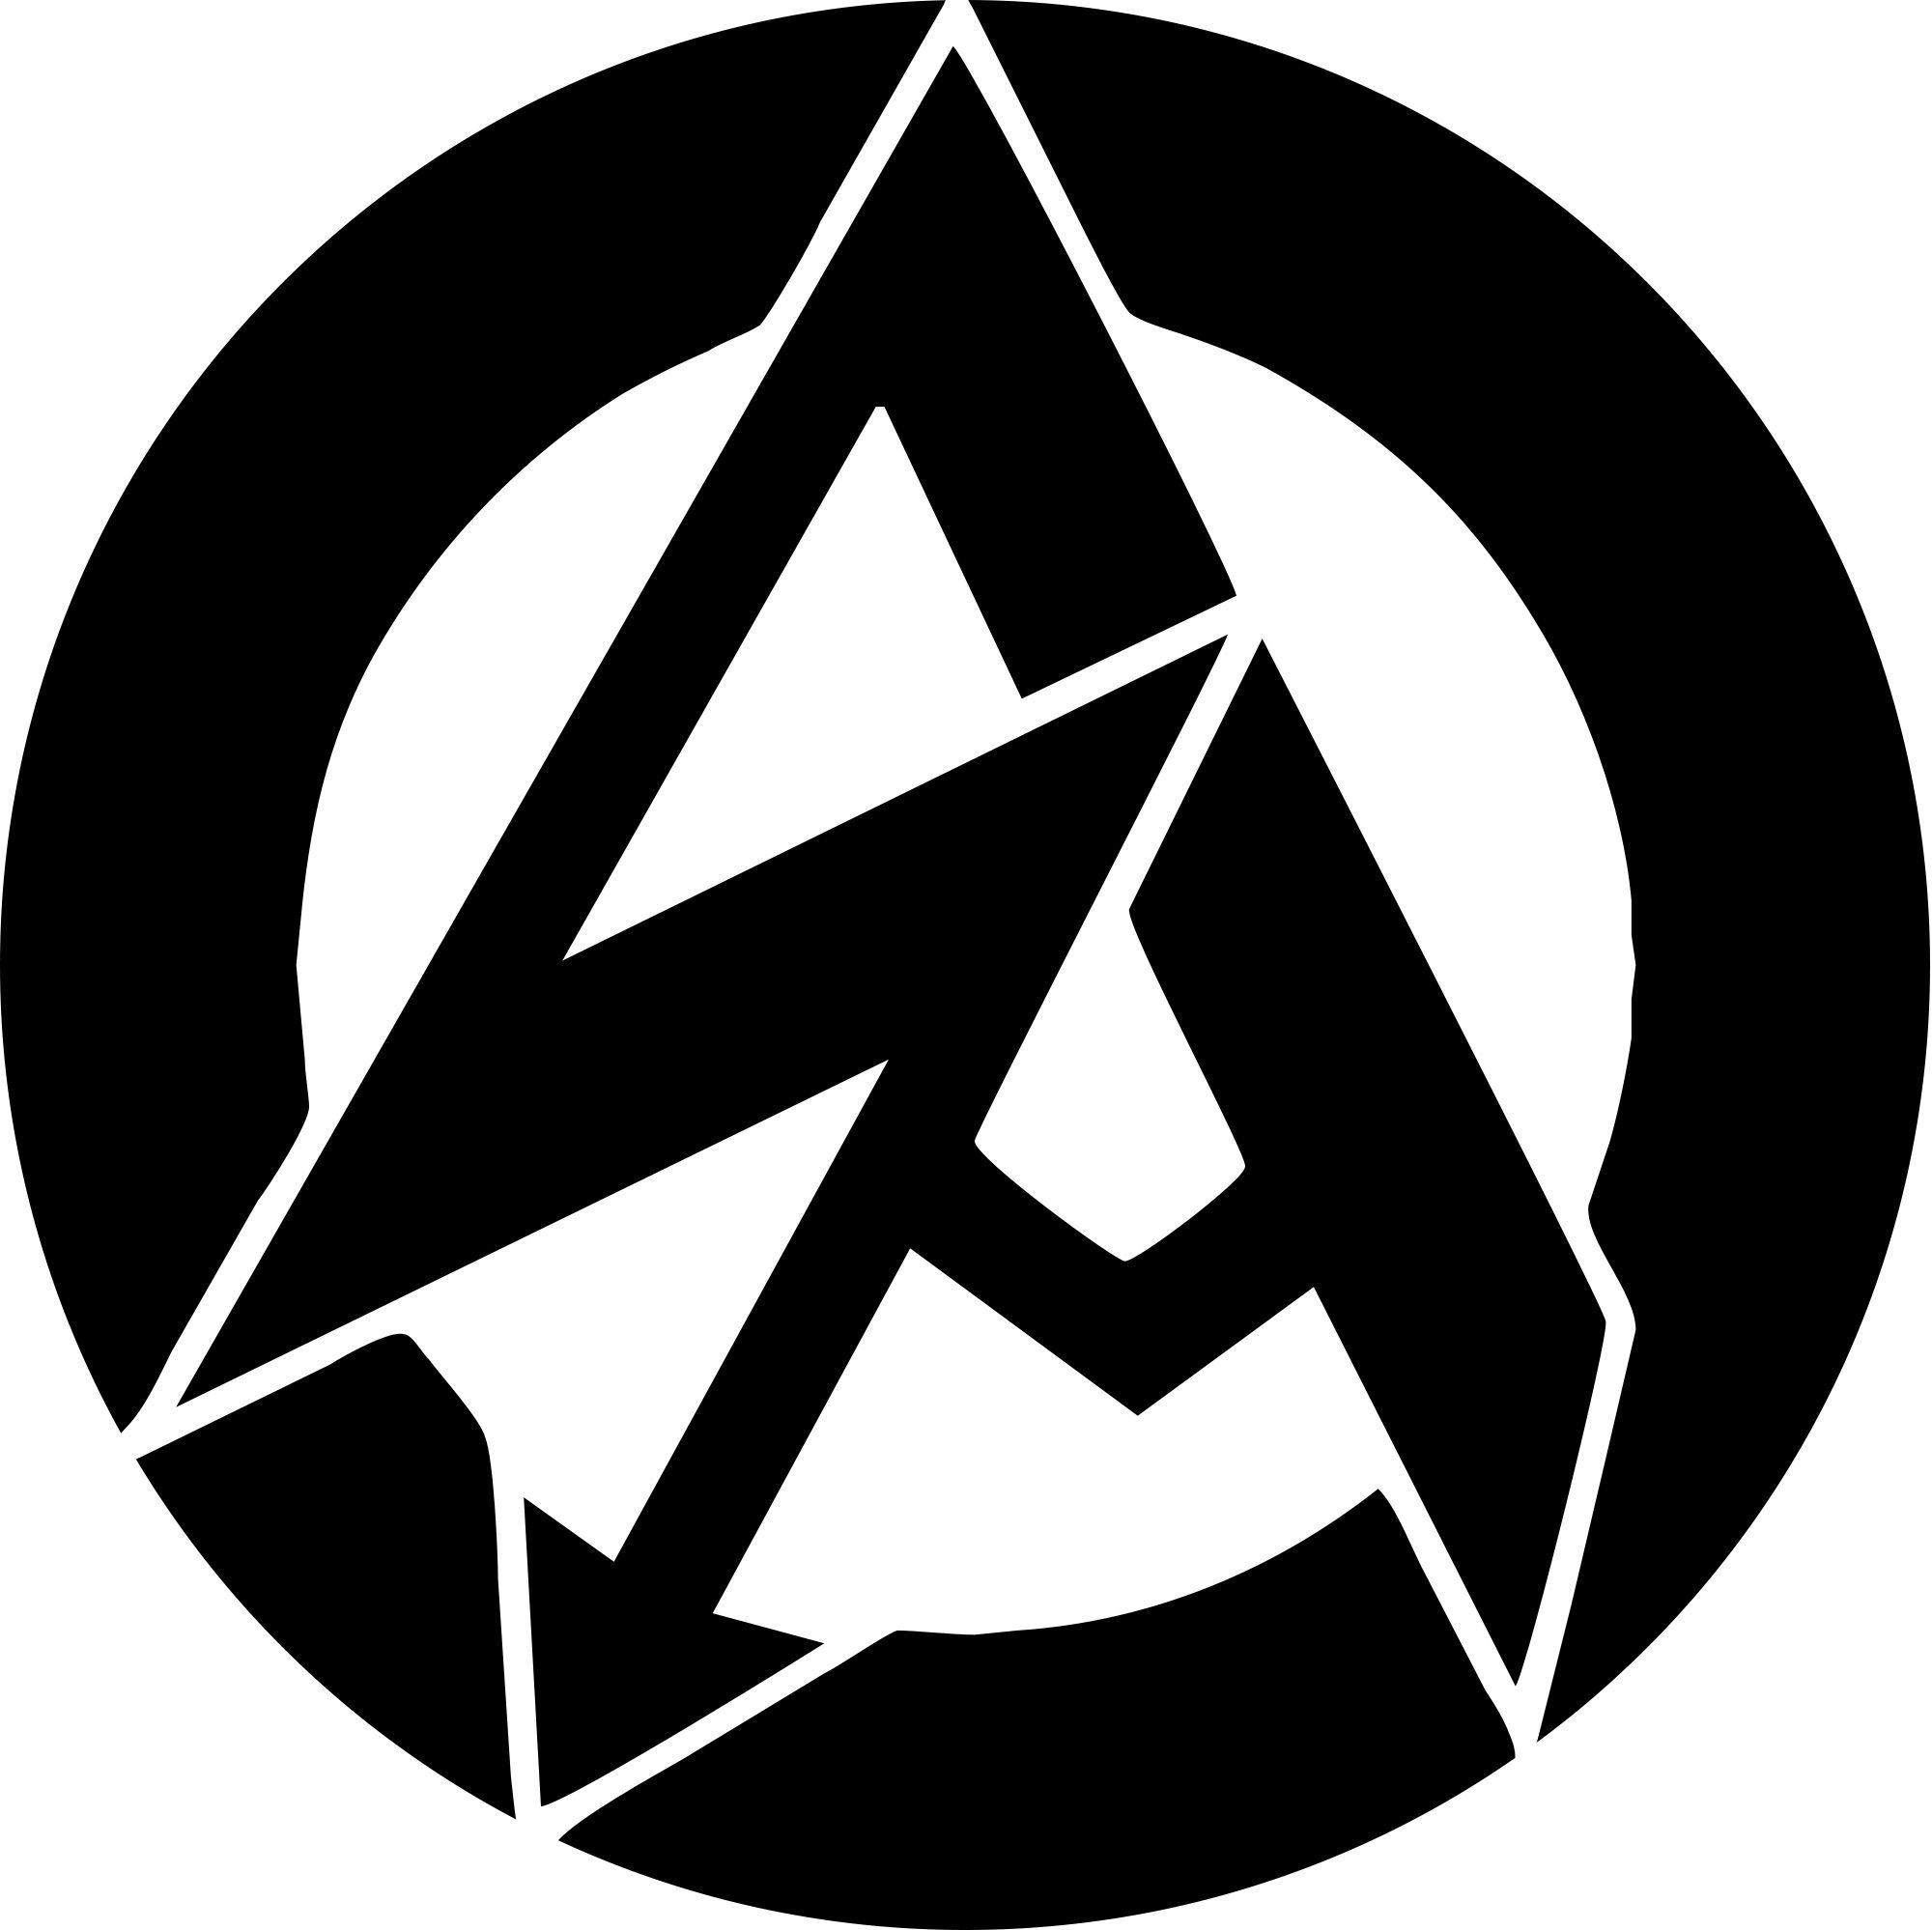 New Avengers Logo - the new avengers logo looks great! - Imgur